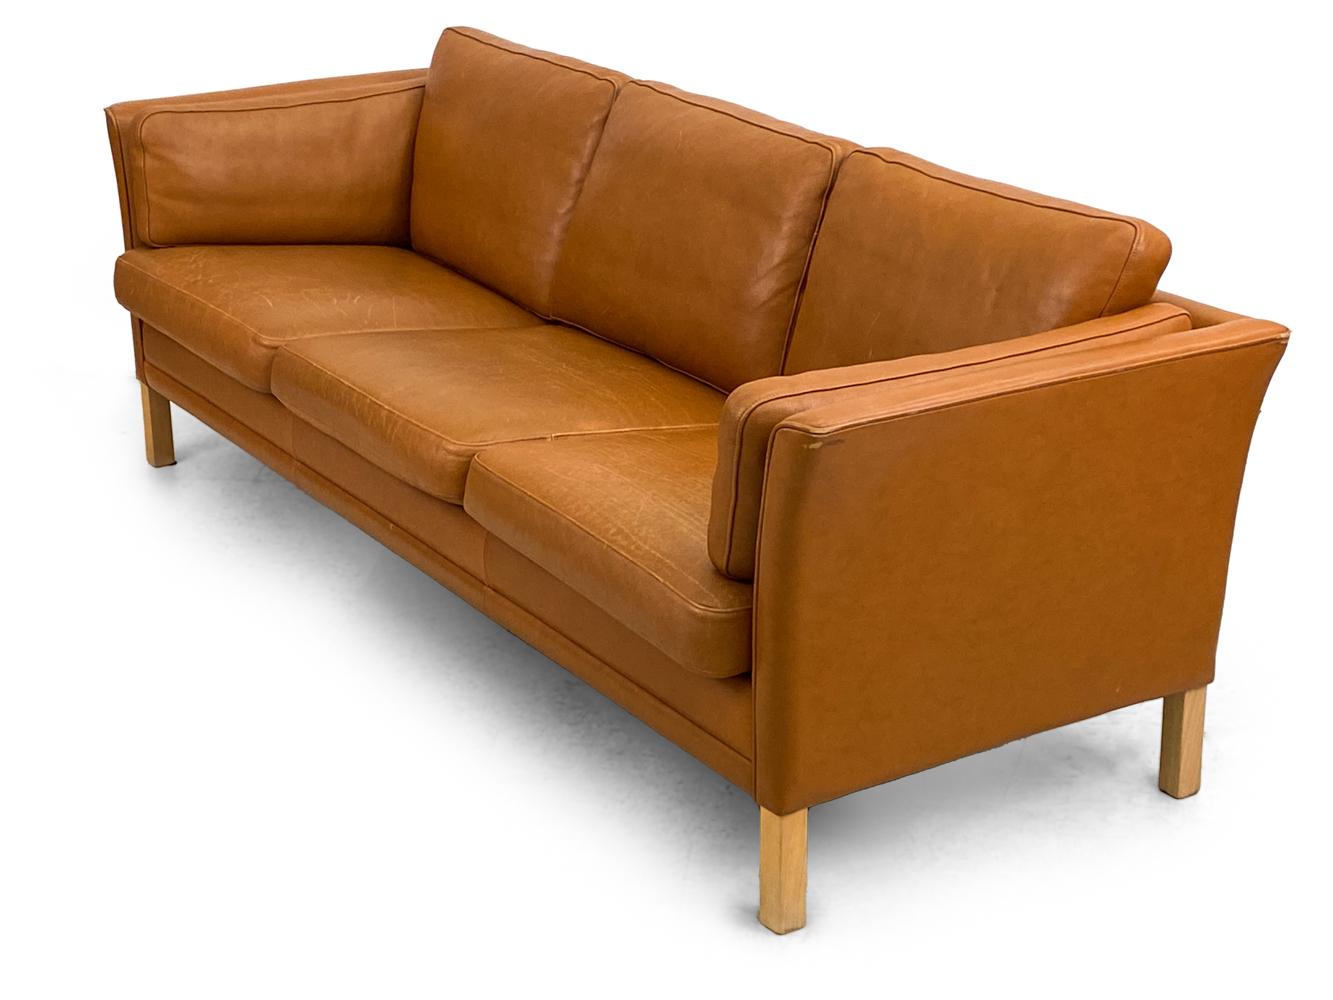 Treten Sie ein in ein Reich des luxuriösen Komforts und des unvergleichlichen Designs mit dem Mogens Hansen Danish Modern Caramel Leather Three-Seater Sofa. Dieses Sofa, das die Essenz dänischer Handwerkskunst und die schlichte Ästhetik des modernen